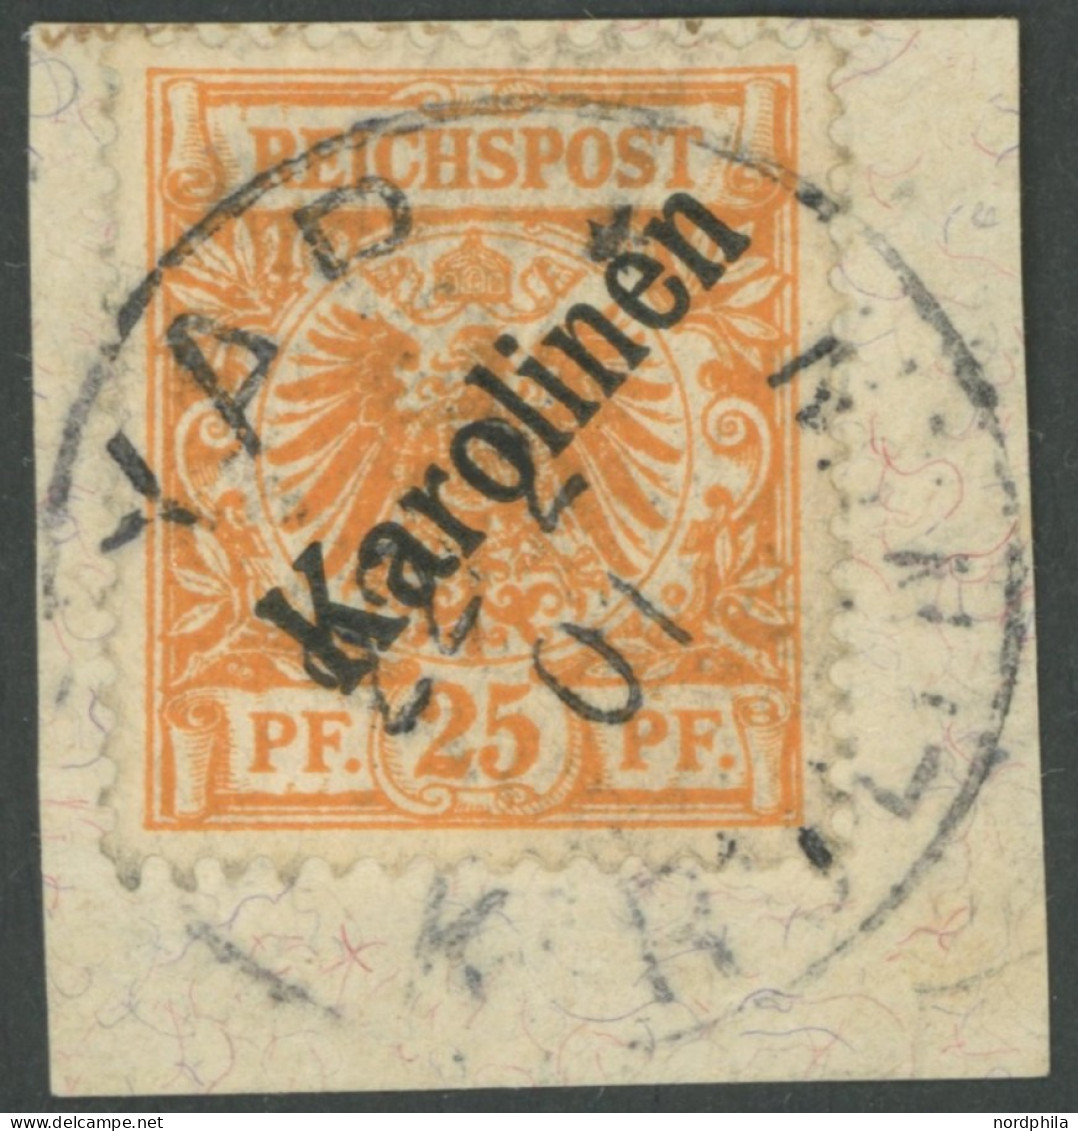 KAROLINEN 5I BrfStk, 1899, 25 Pf. Diagonaler Aufdruck, Stempel YAP, Prachtbriefstück, Diverse Altsignaturen Und Fotoatte - Carolines